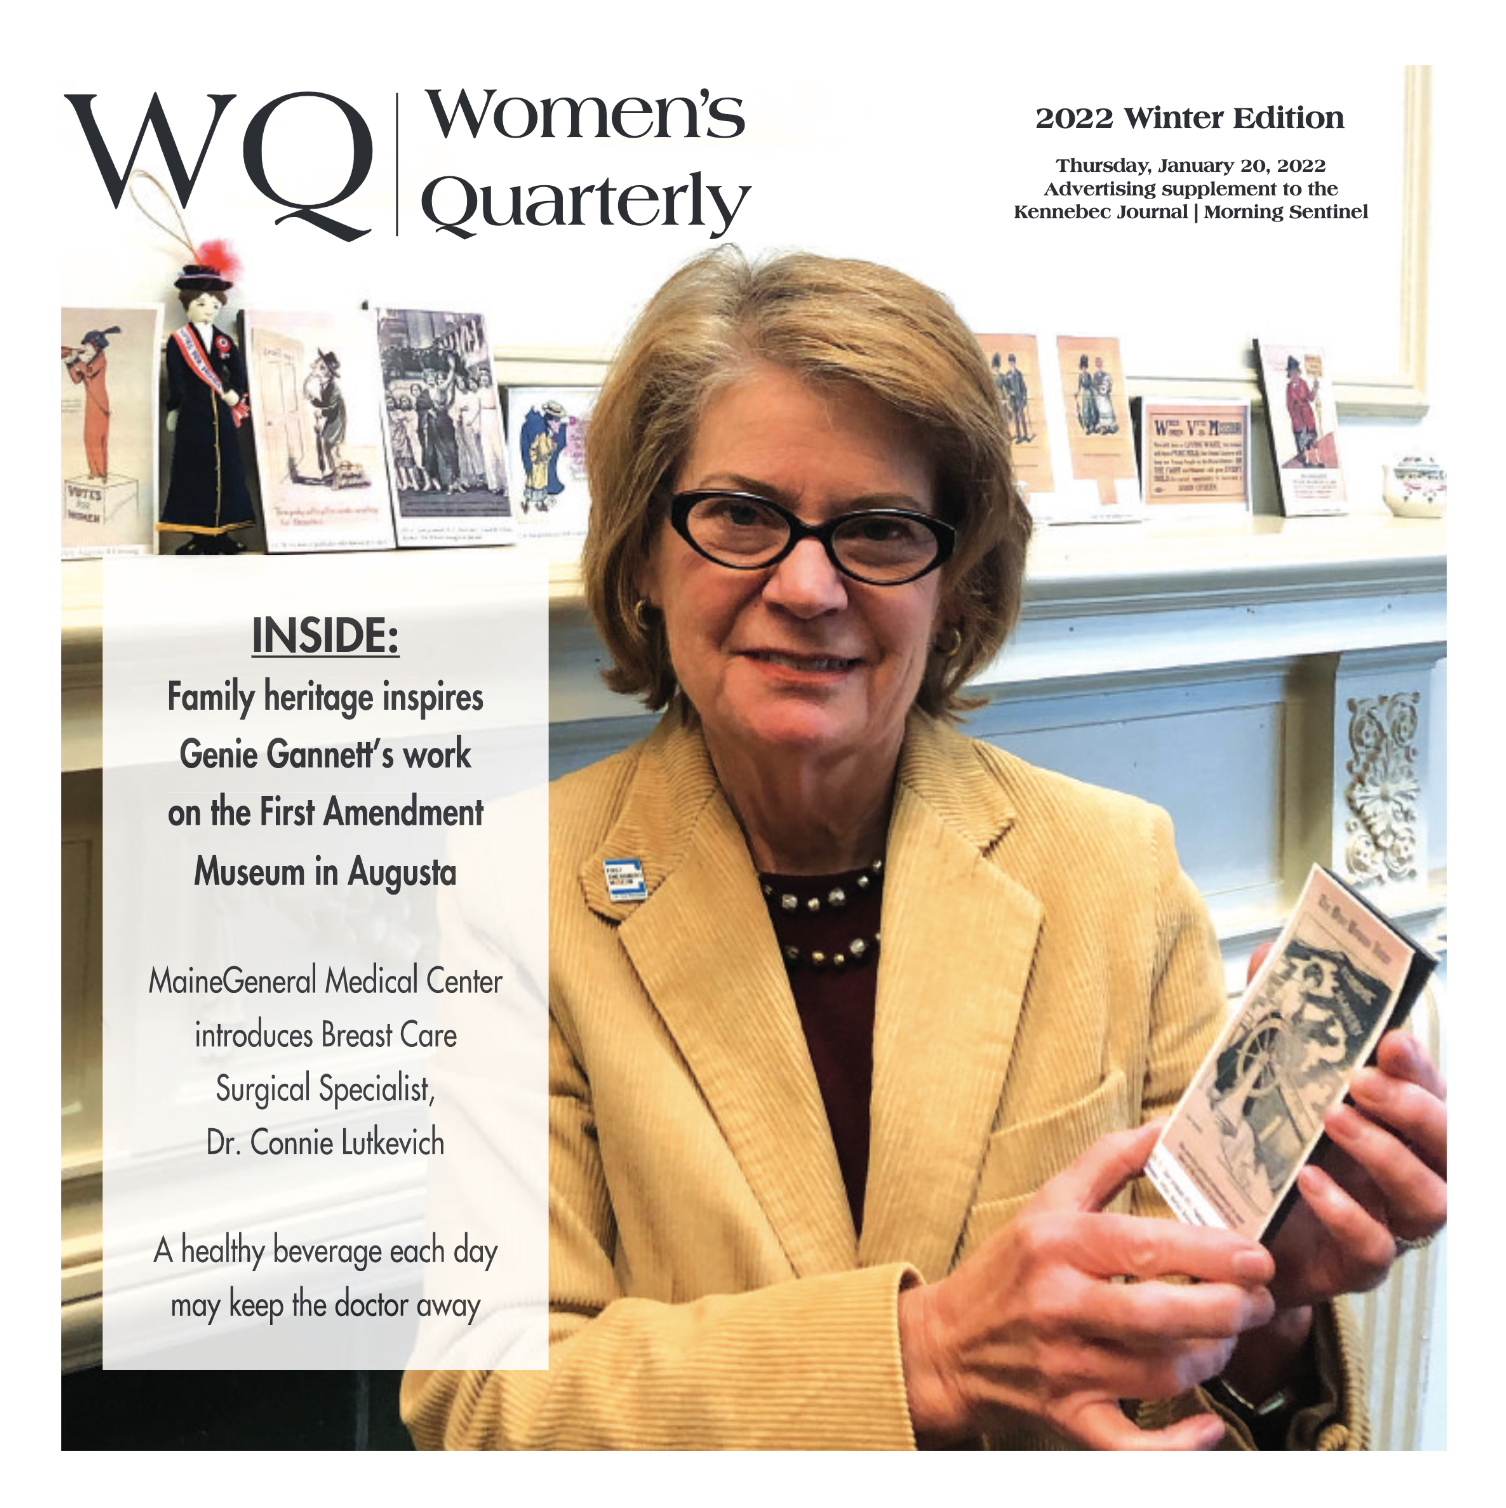 Women’s Quarterly with Genie Gannett